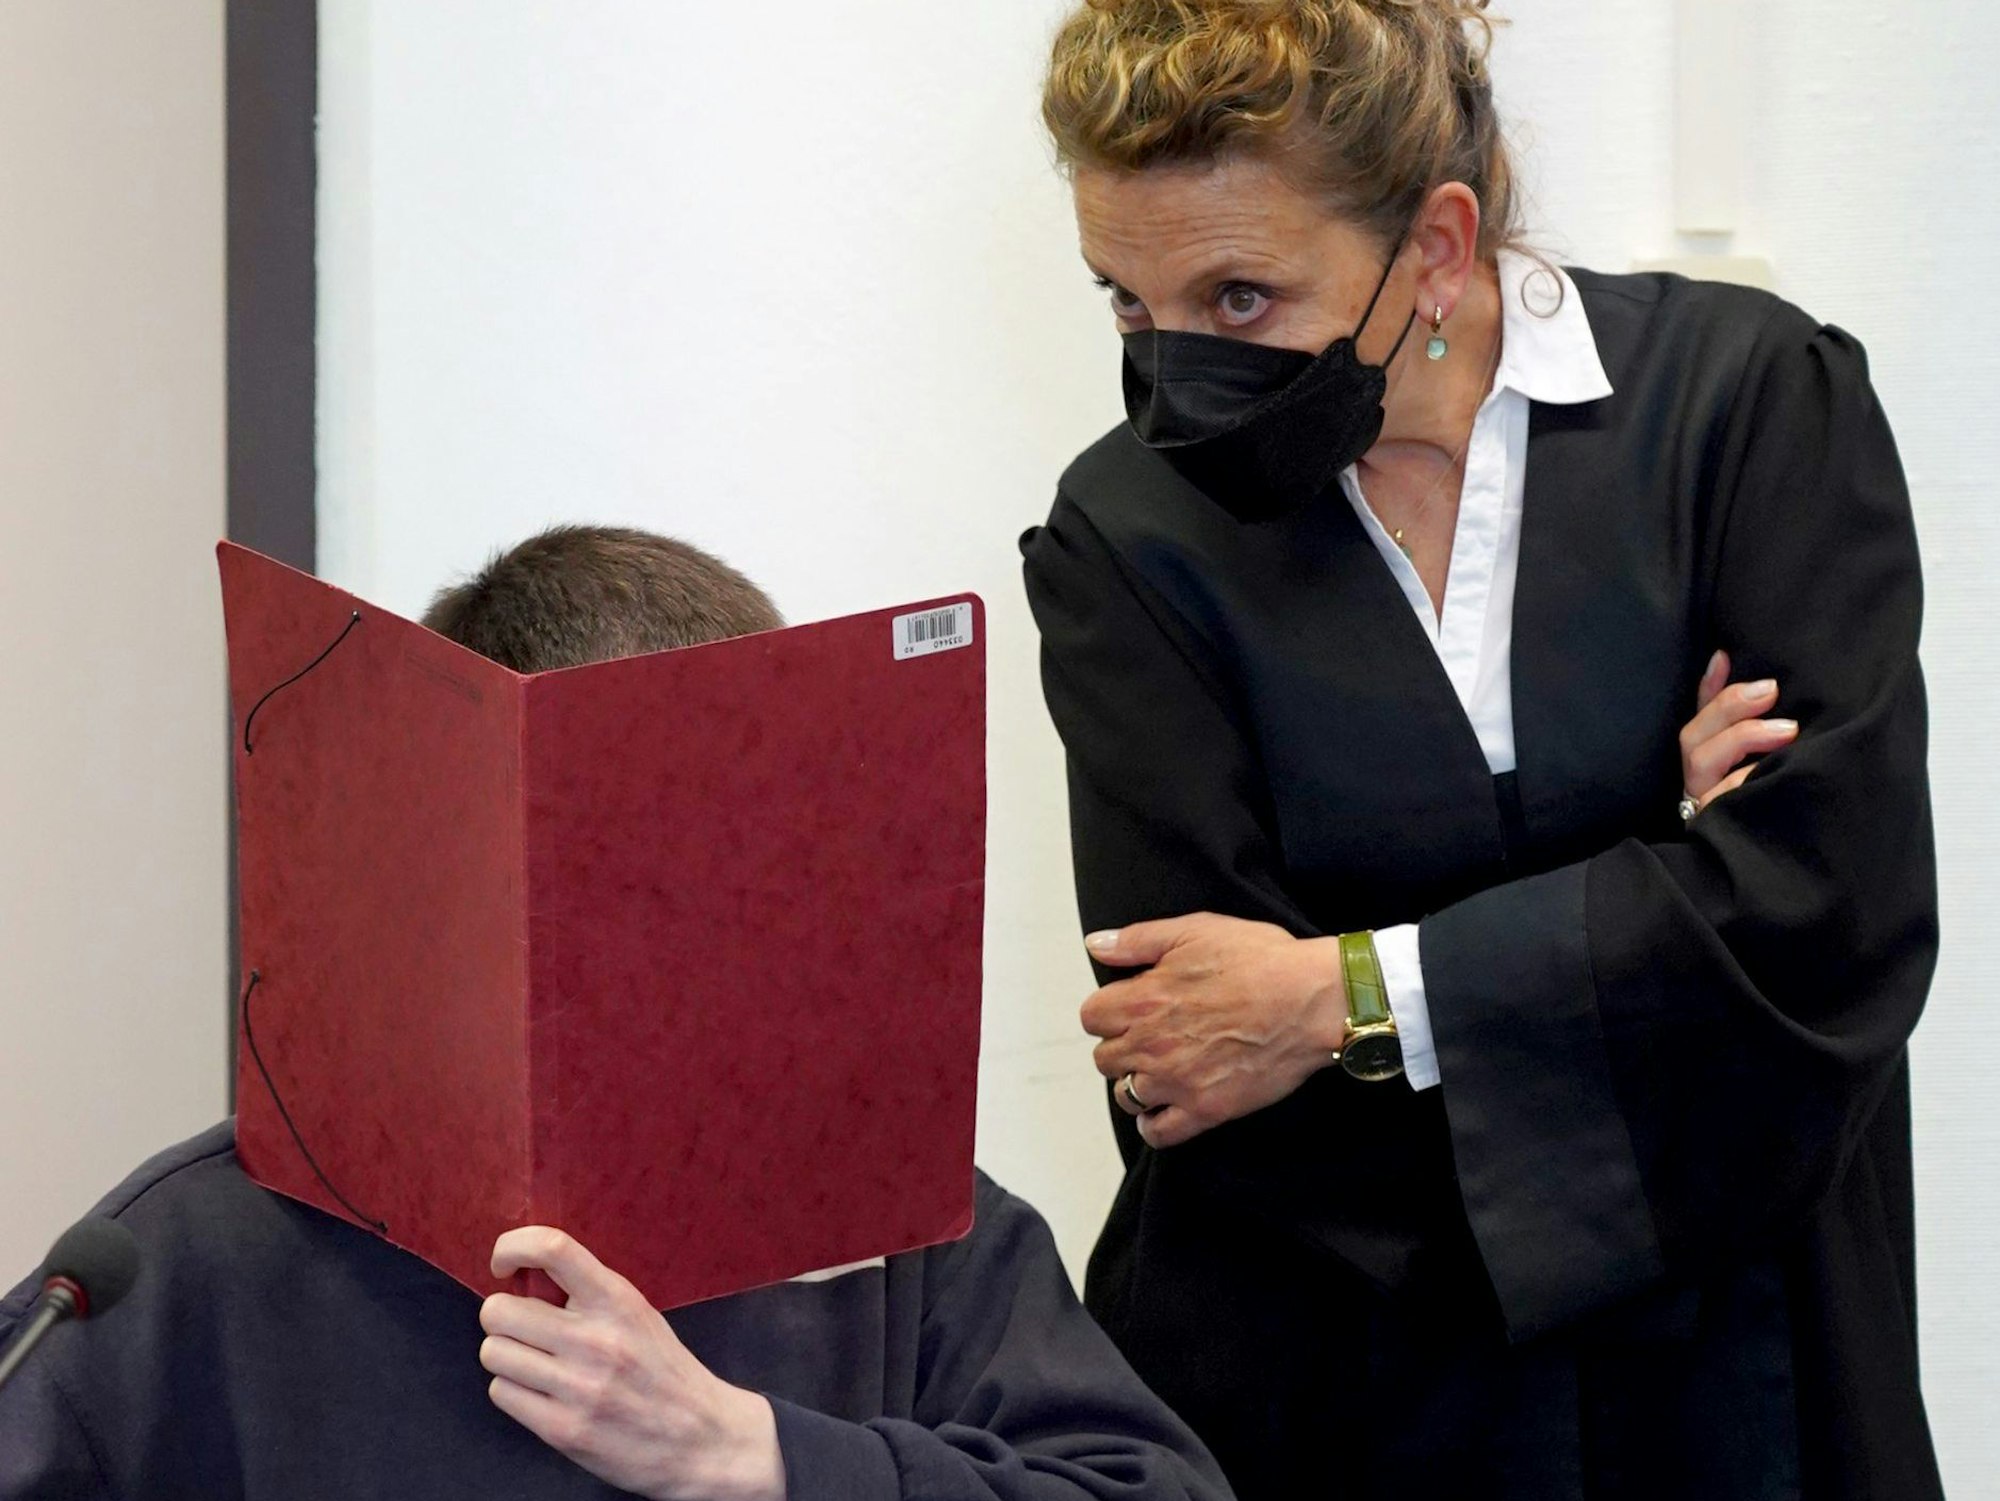 Ein Mann hält sich in einem Gerichtssaal eine rote Mappe vor das Gesicht.